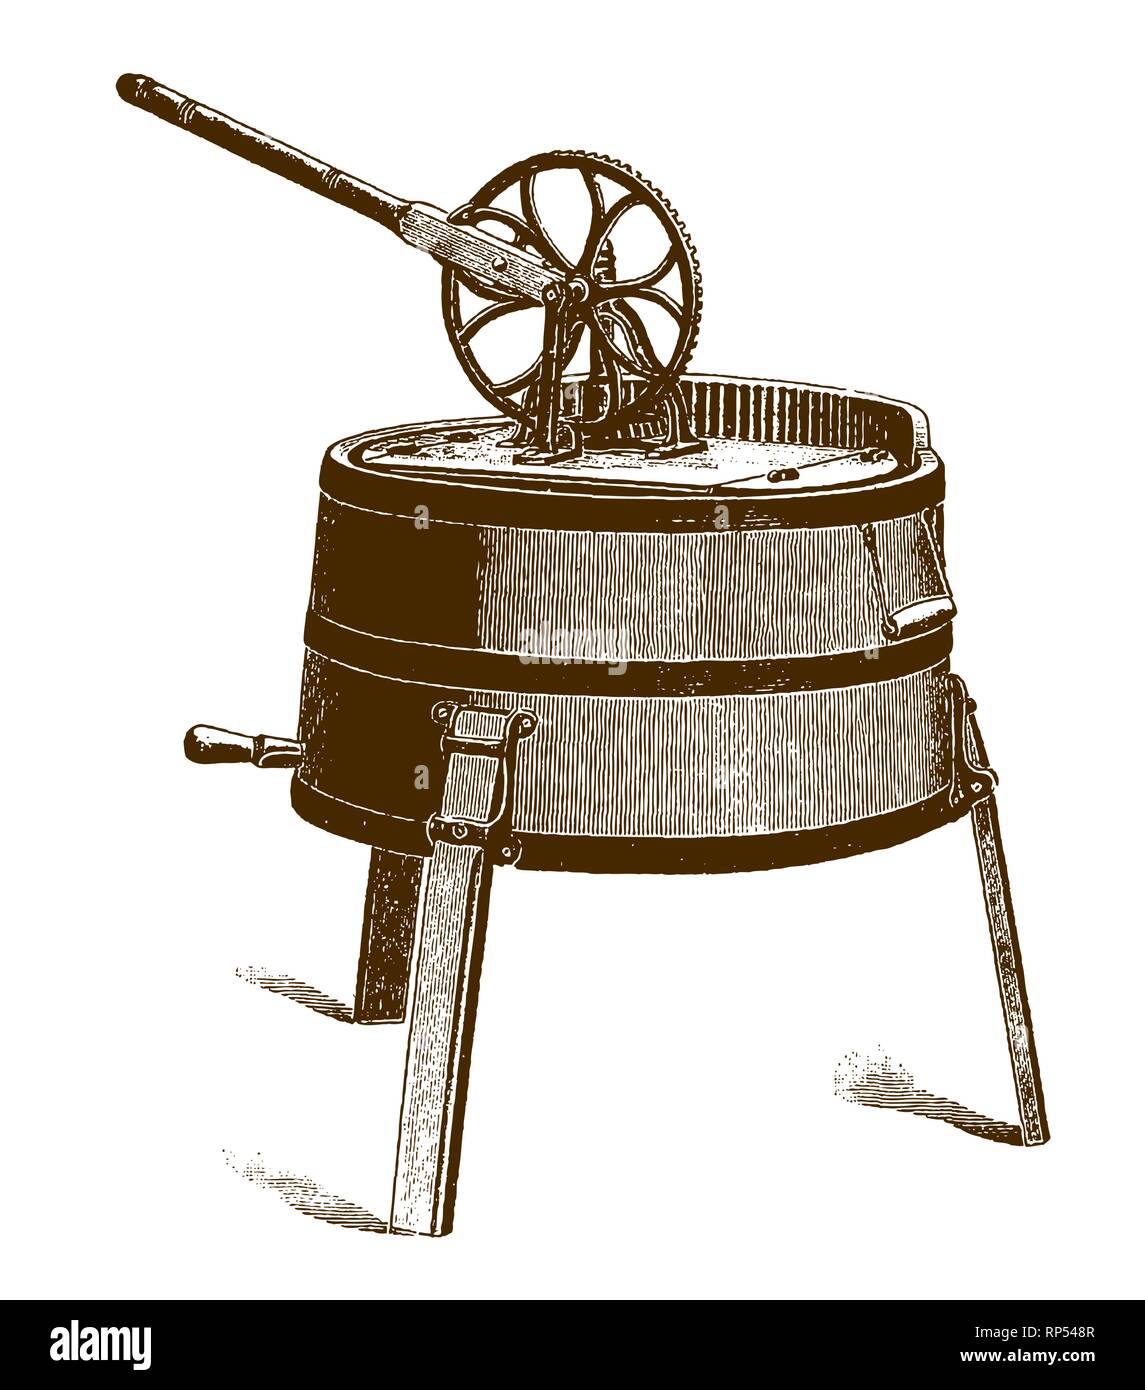 Antike mechanische Waschmaschine, nach einer Gravur oder Radierung aus dem 19. Jahrhundert Stock Vektor